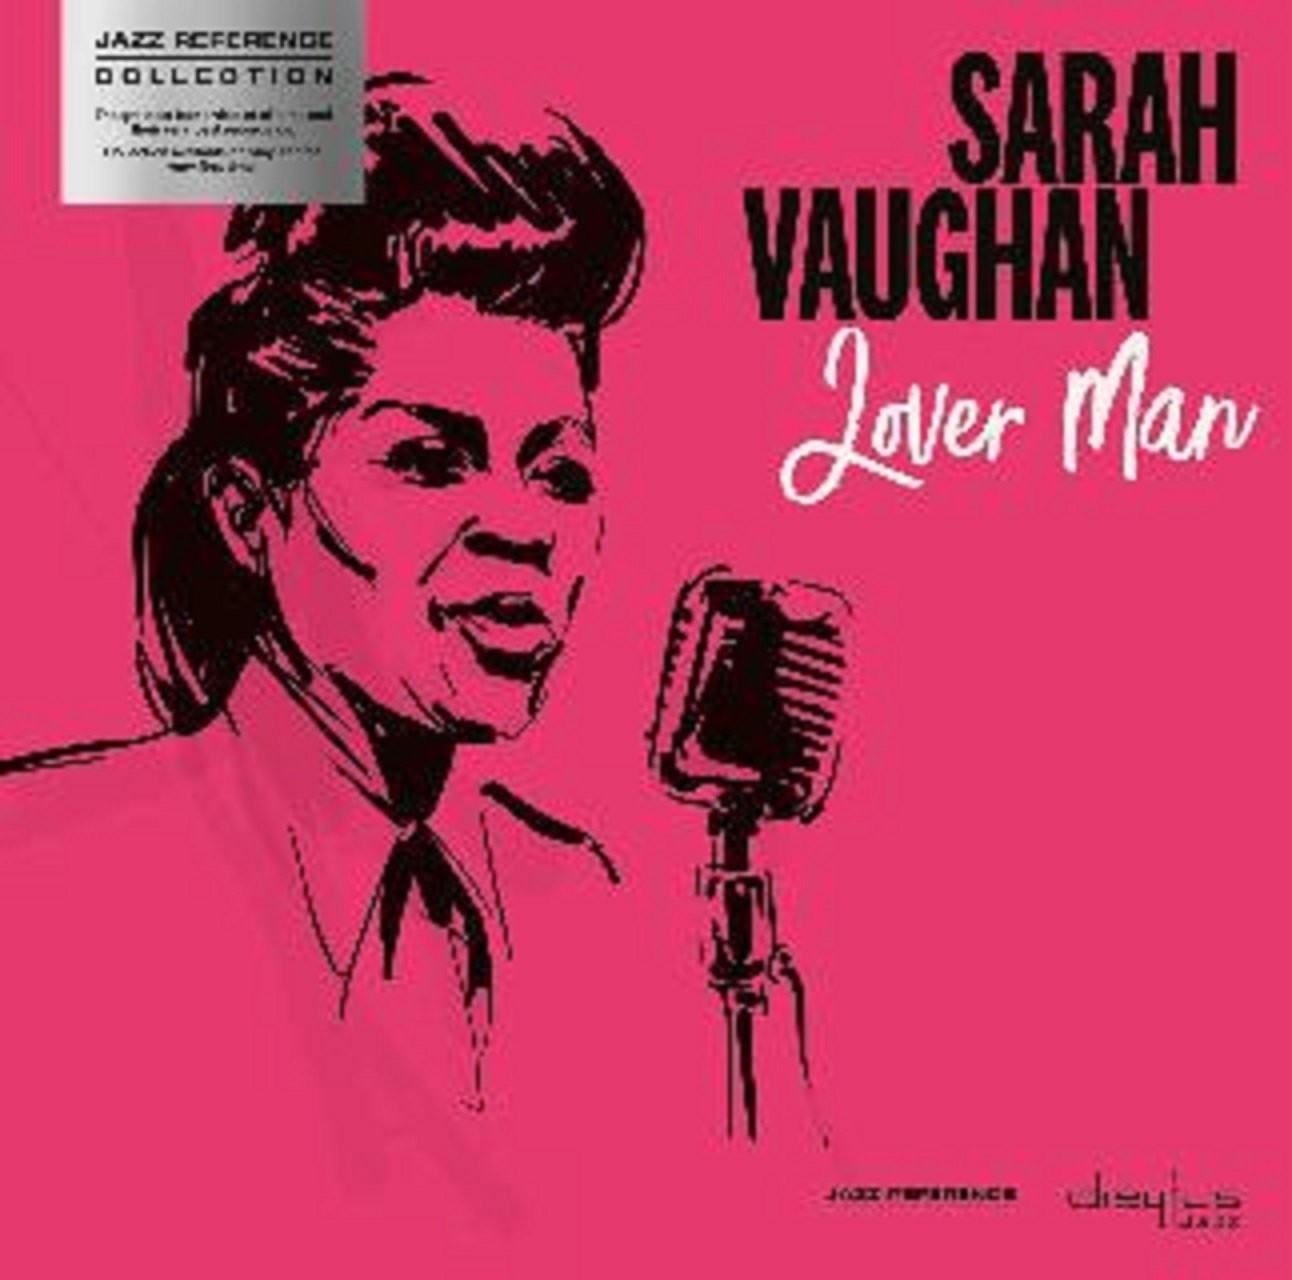 Vaughan, Sarah - Lover Man